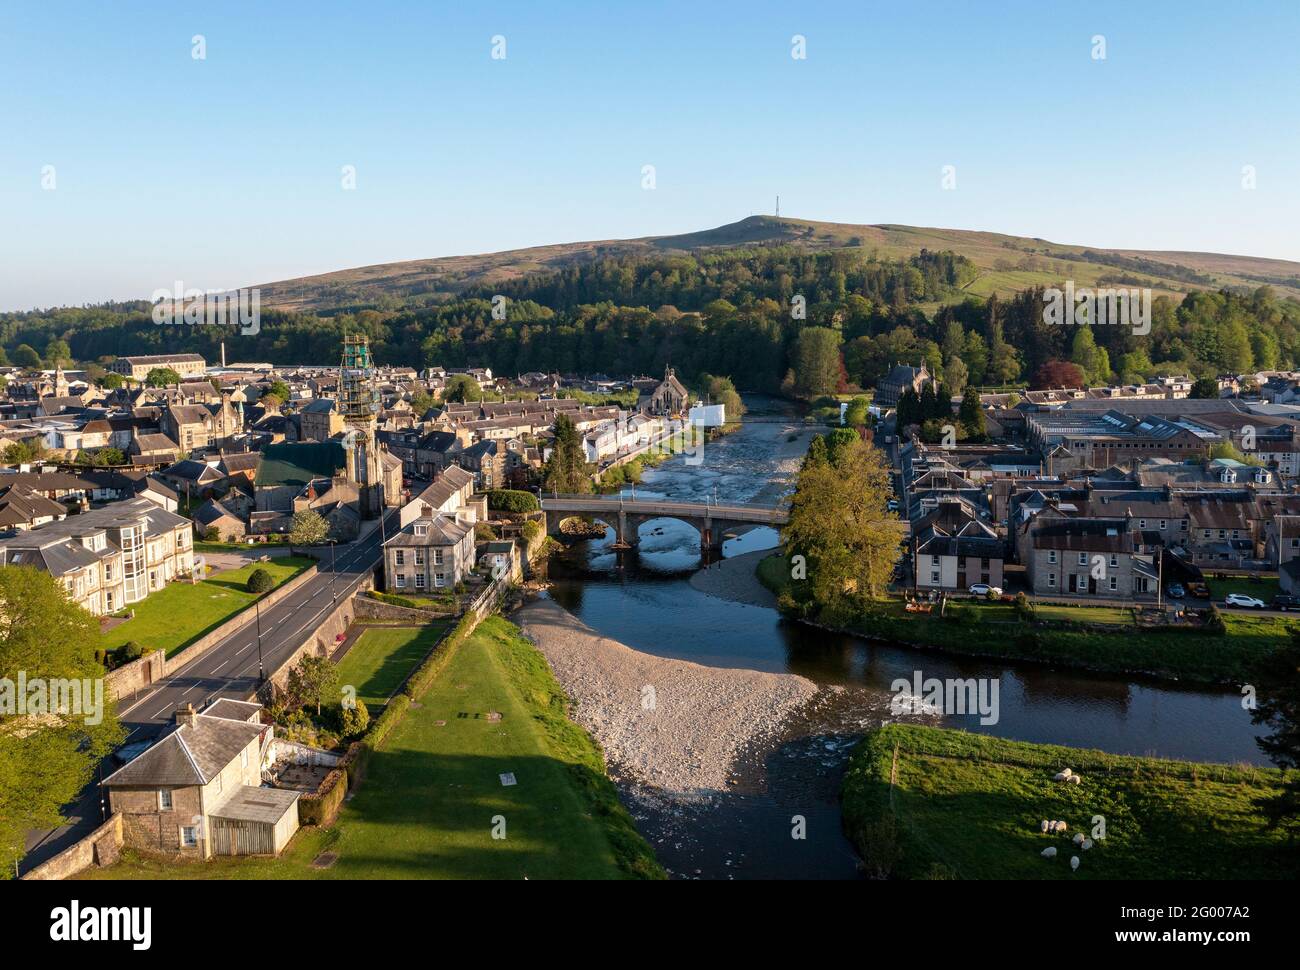 Luftaufnahme des Stadtzentrums von Langholm an der Kreuzung des Flusses Esk und des Flusses EWS, Dumfries & Galloway, Scottish Borders, Schottland, Großbritannien. Stockfoto